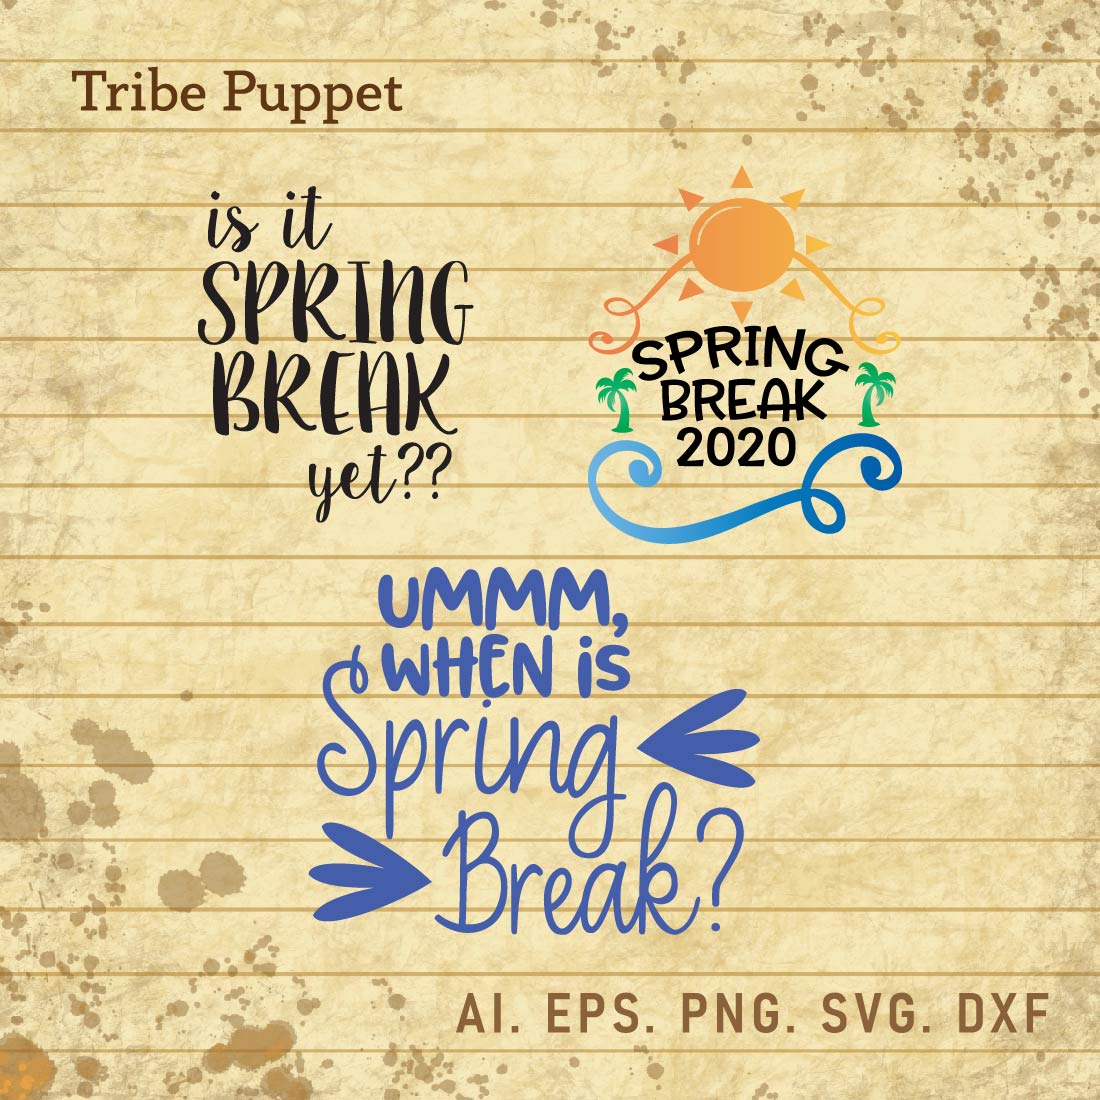 Spring Break Typo cover image.